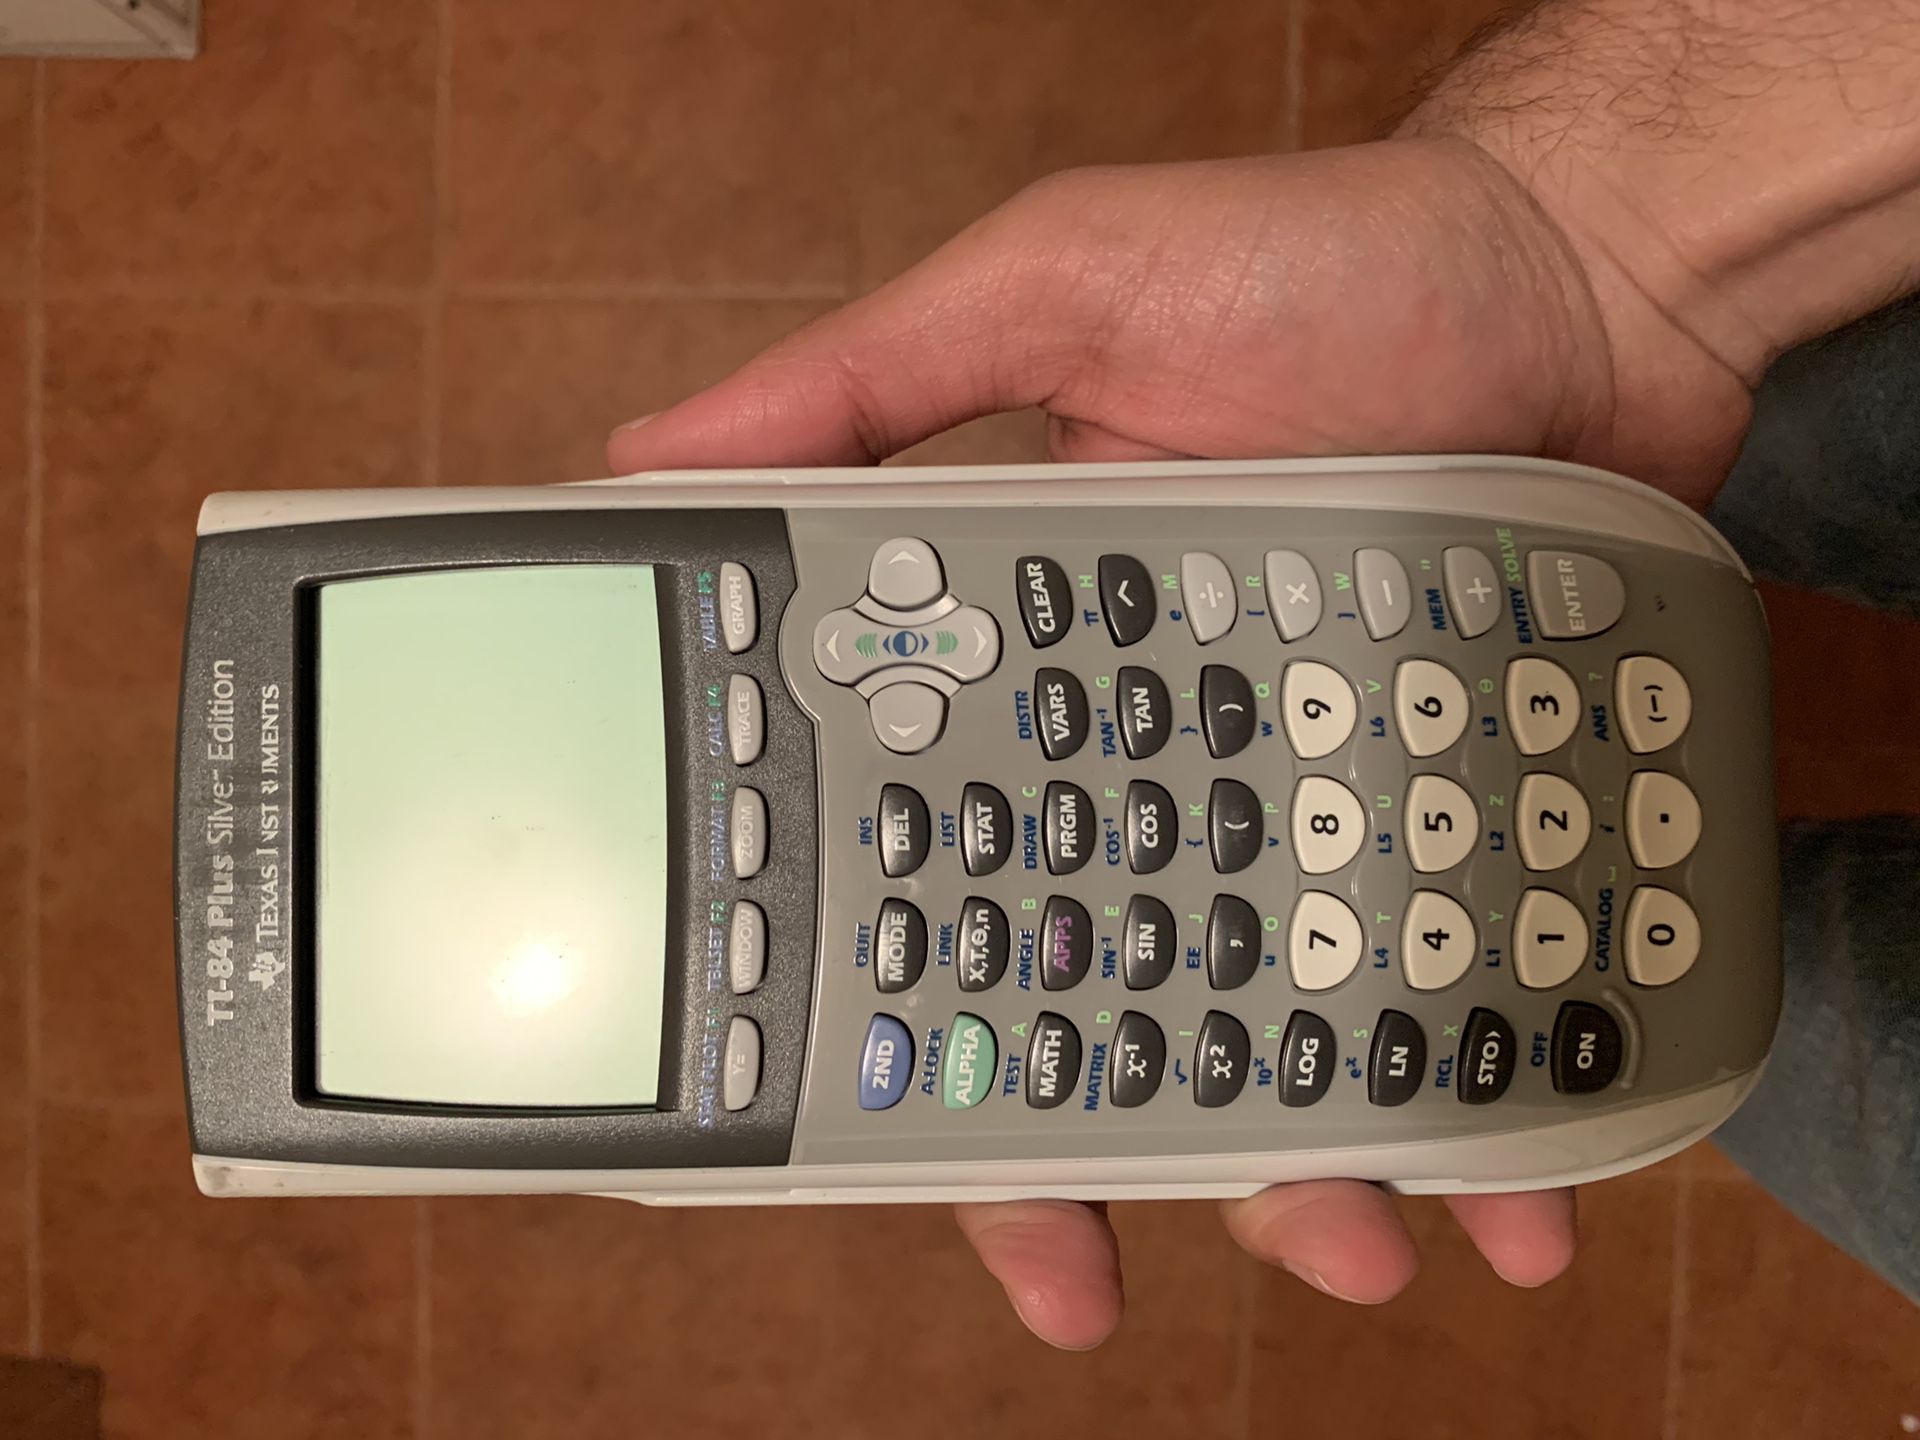 TI-84 Plus Silver Edition Calculator